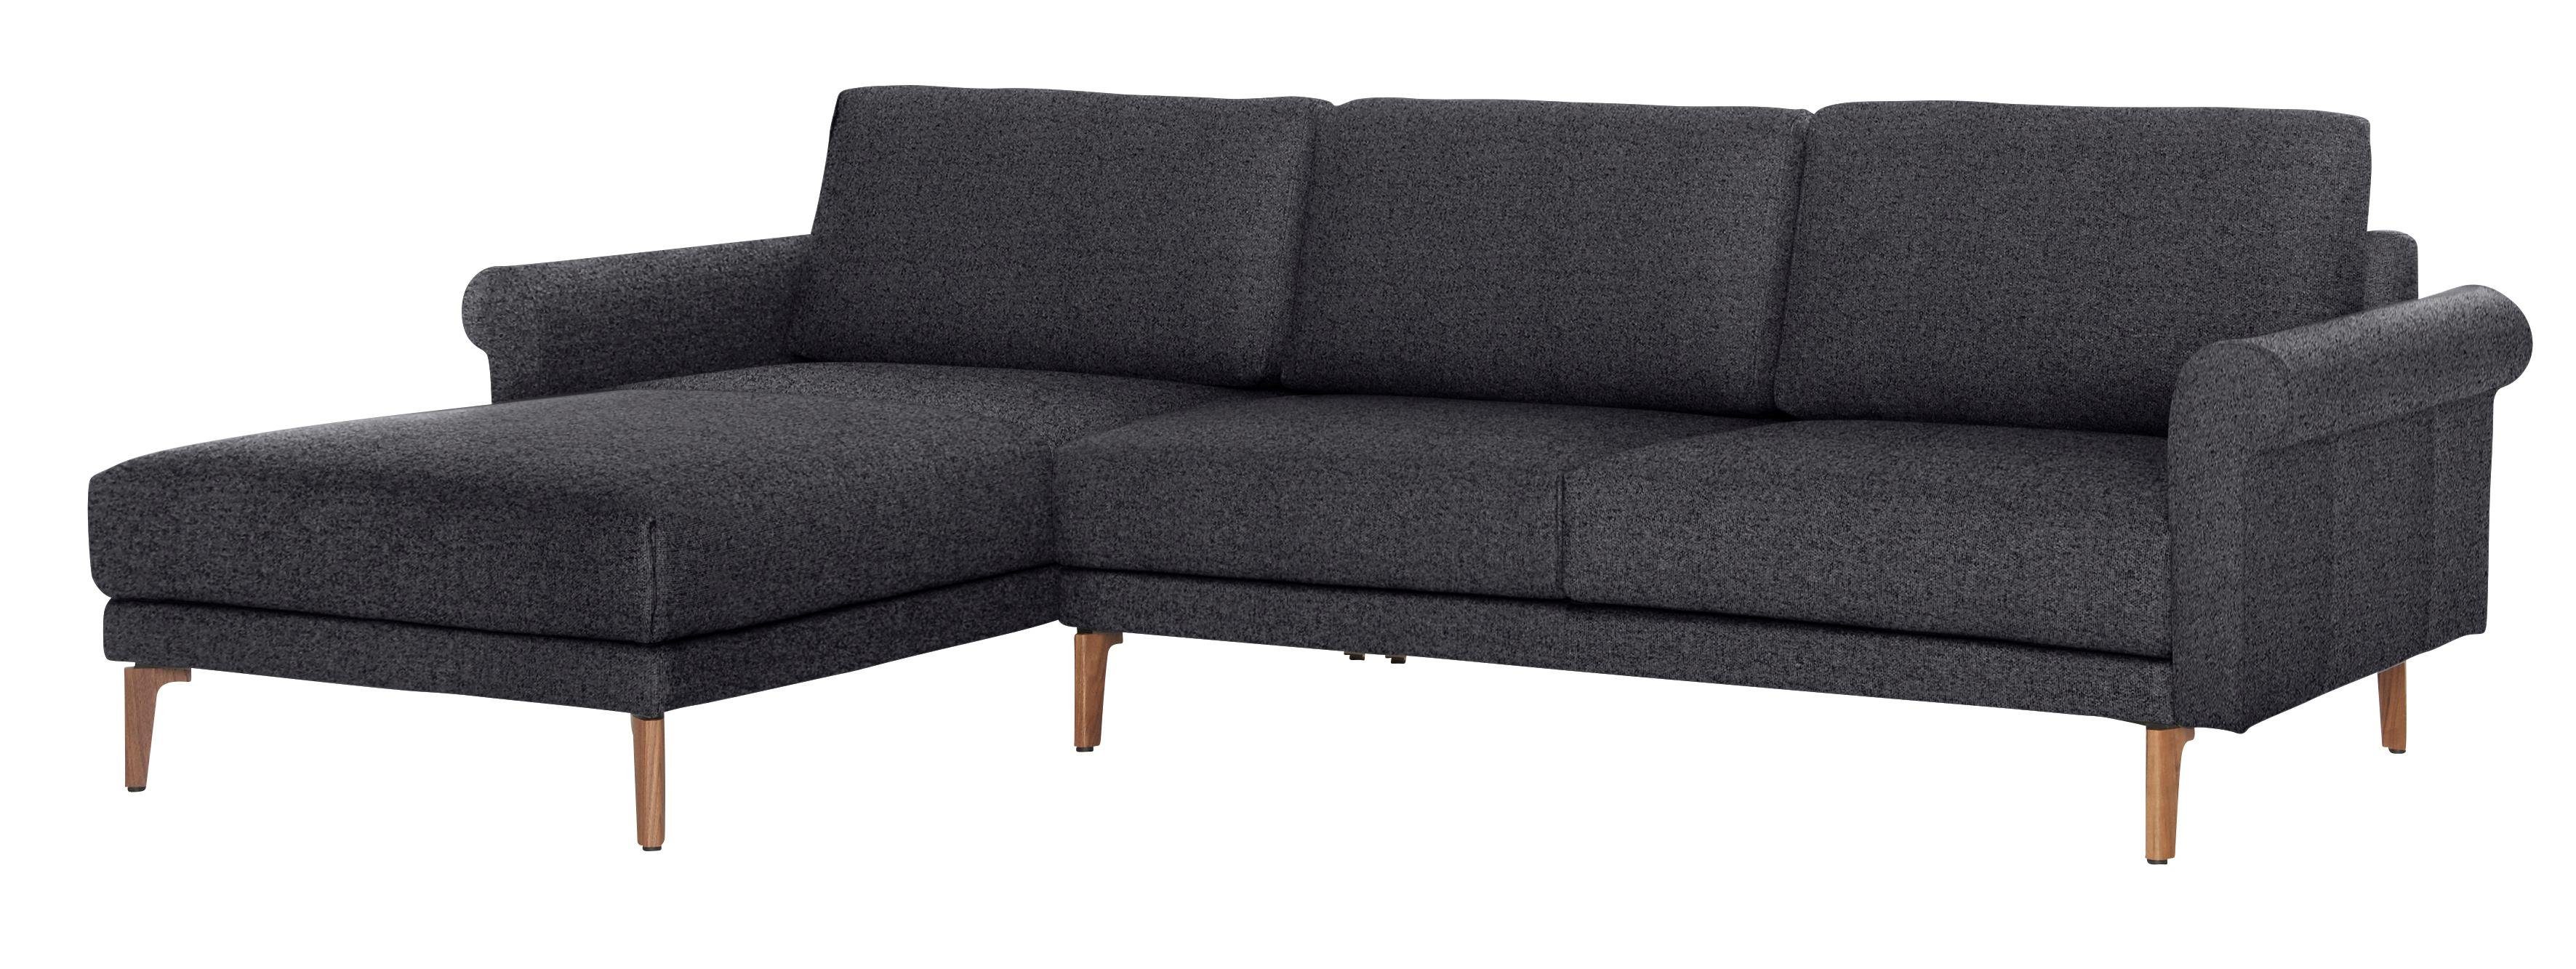 hs.450, Nussbaum Ecksofa Armlehne sofa hülsta Breite Fuß cm, modern Landhaus, 262 Schnecke